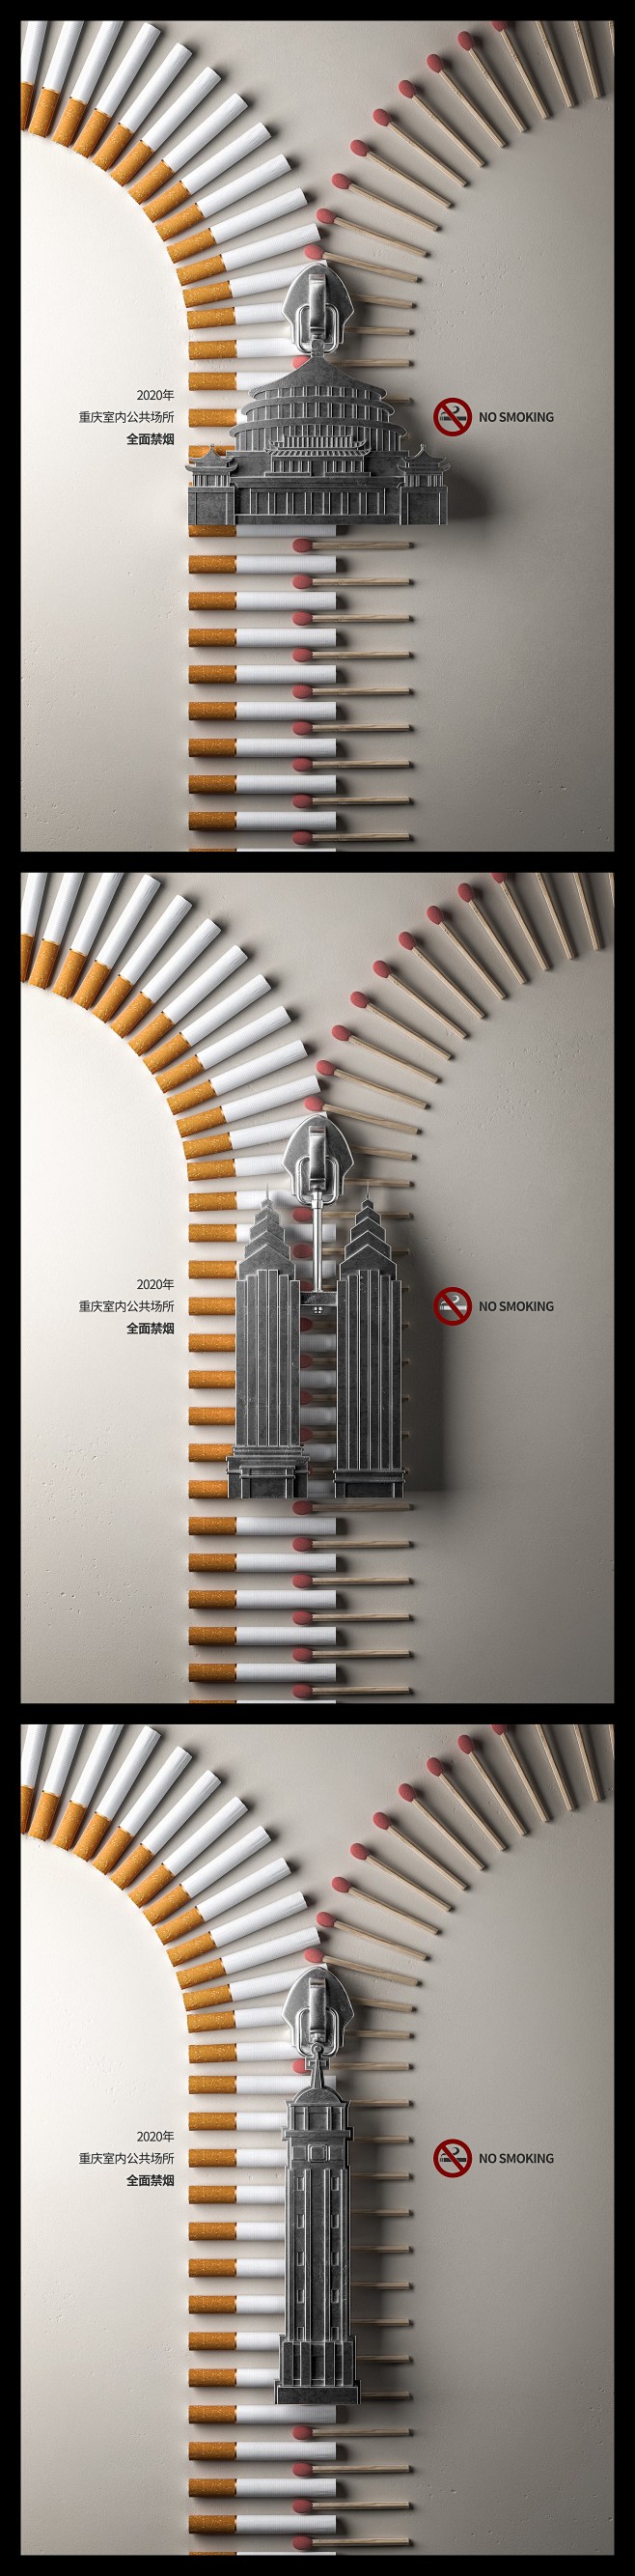 禁止吸烟广告